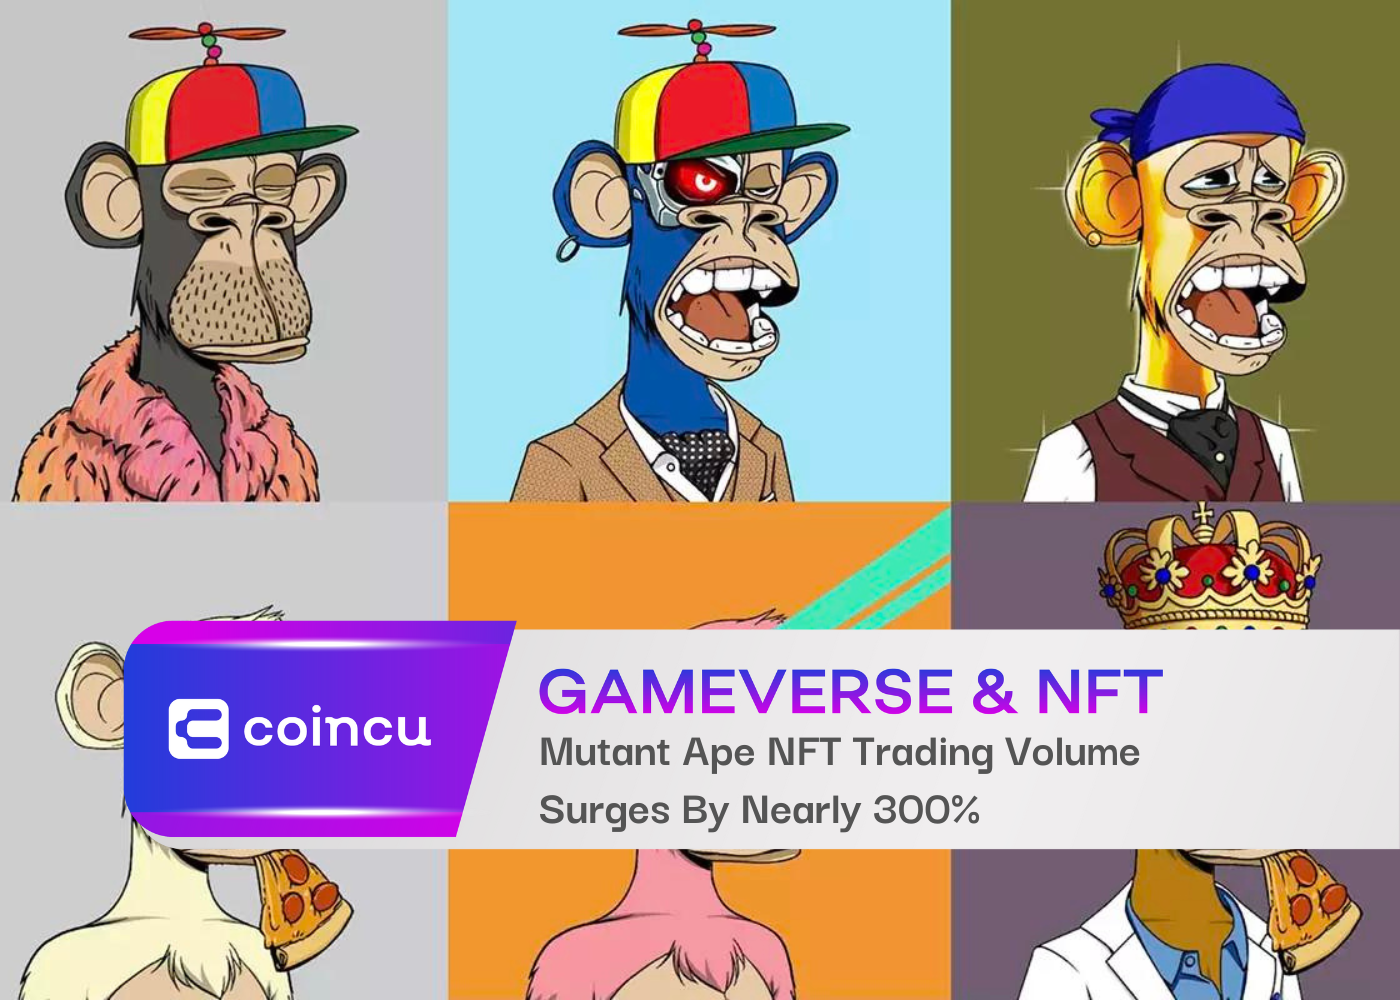 Mutant Ape NFT Trading Volume